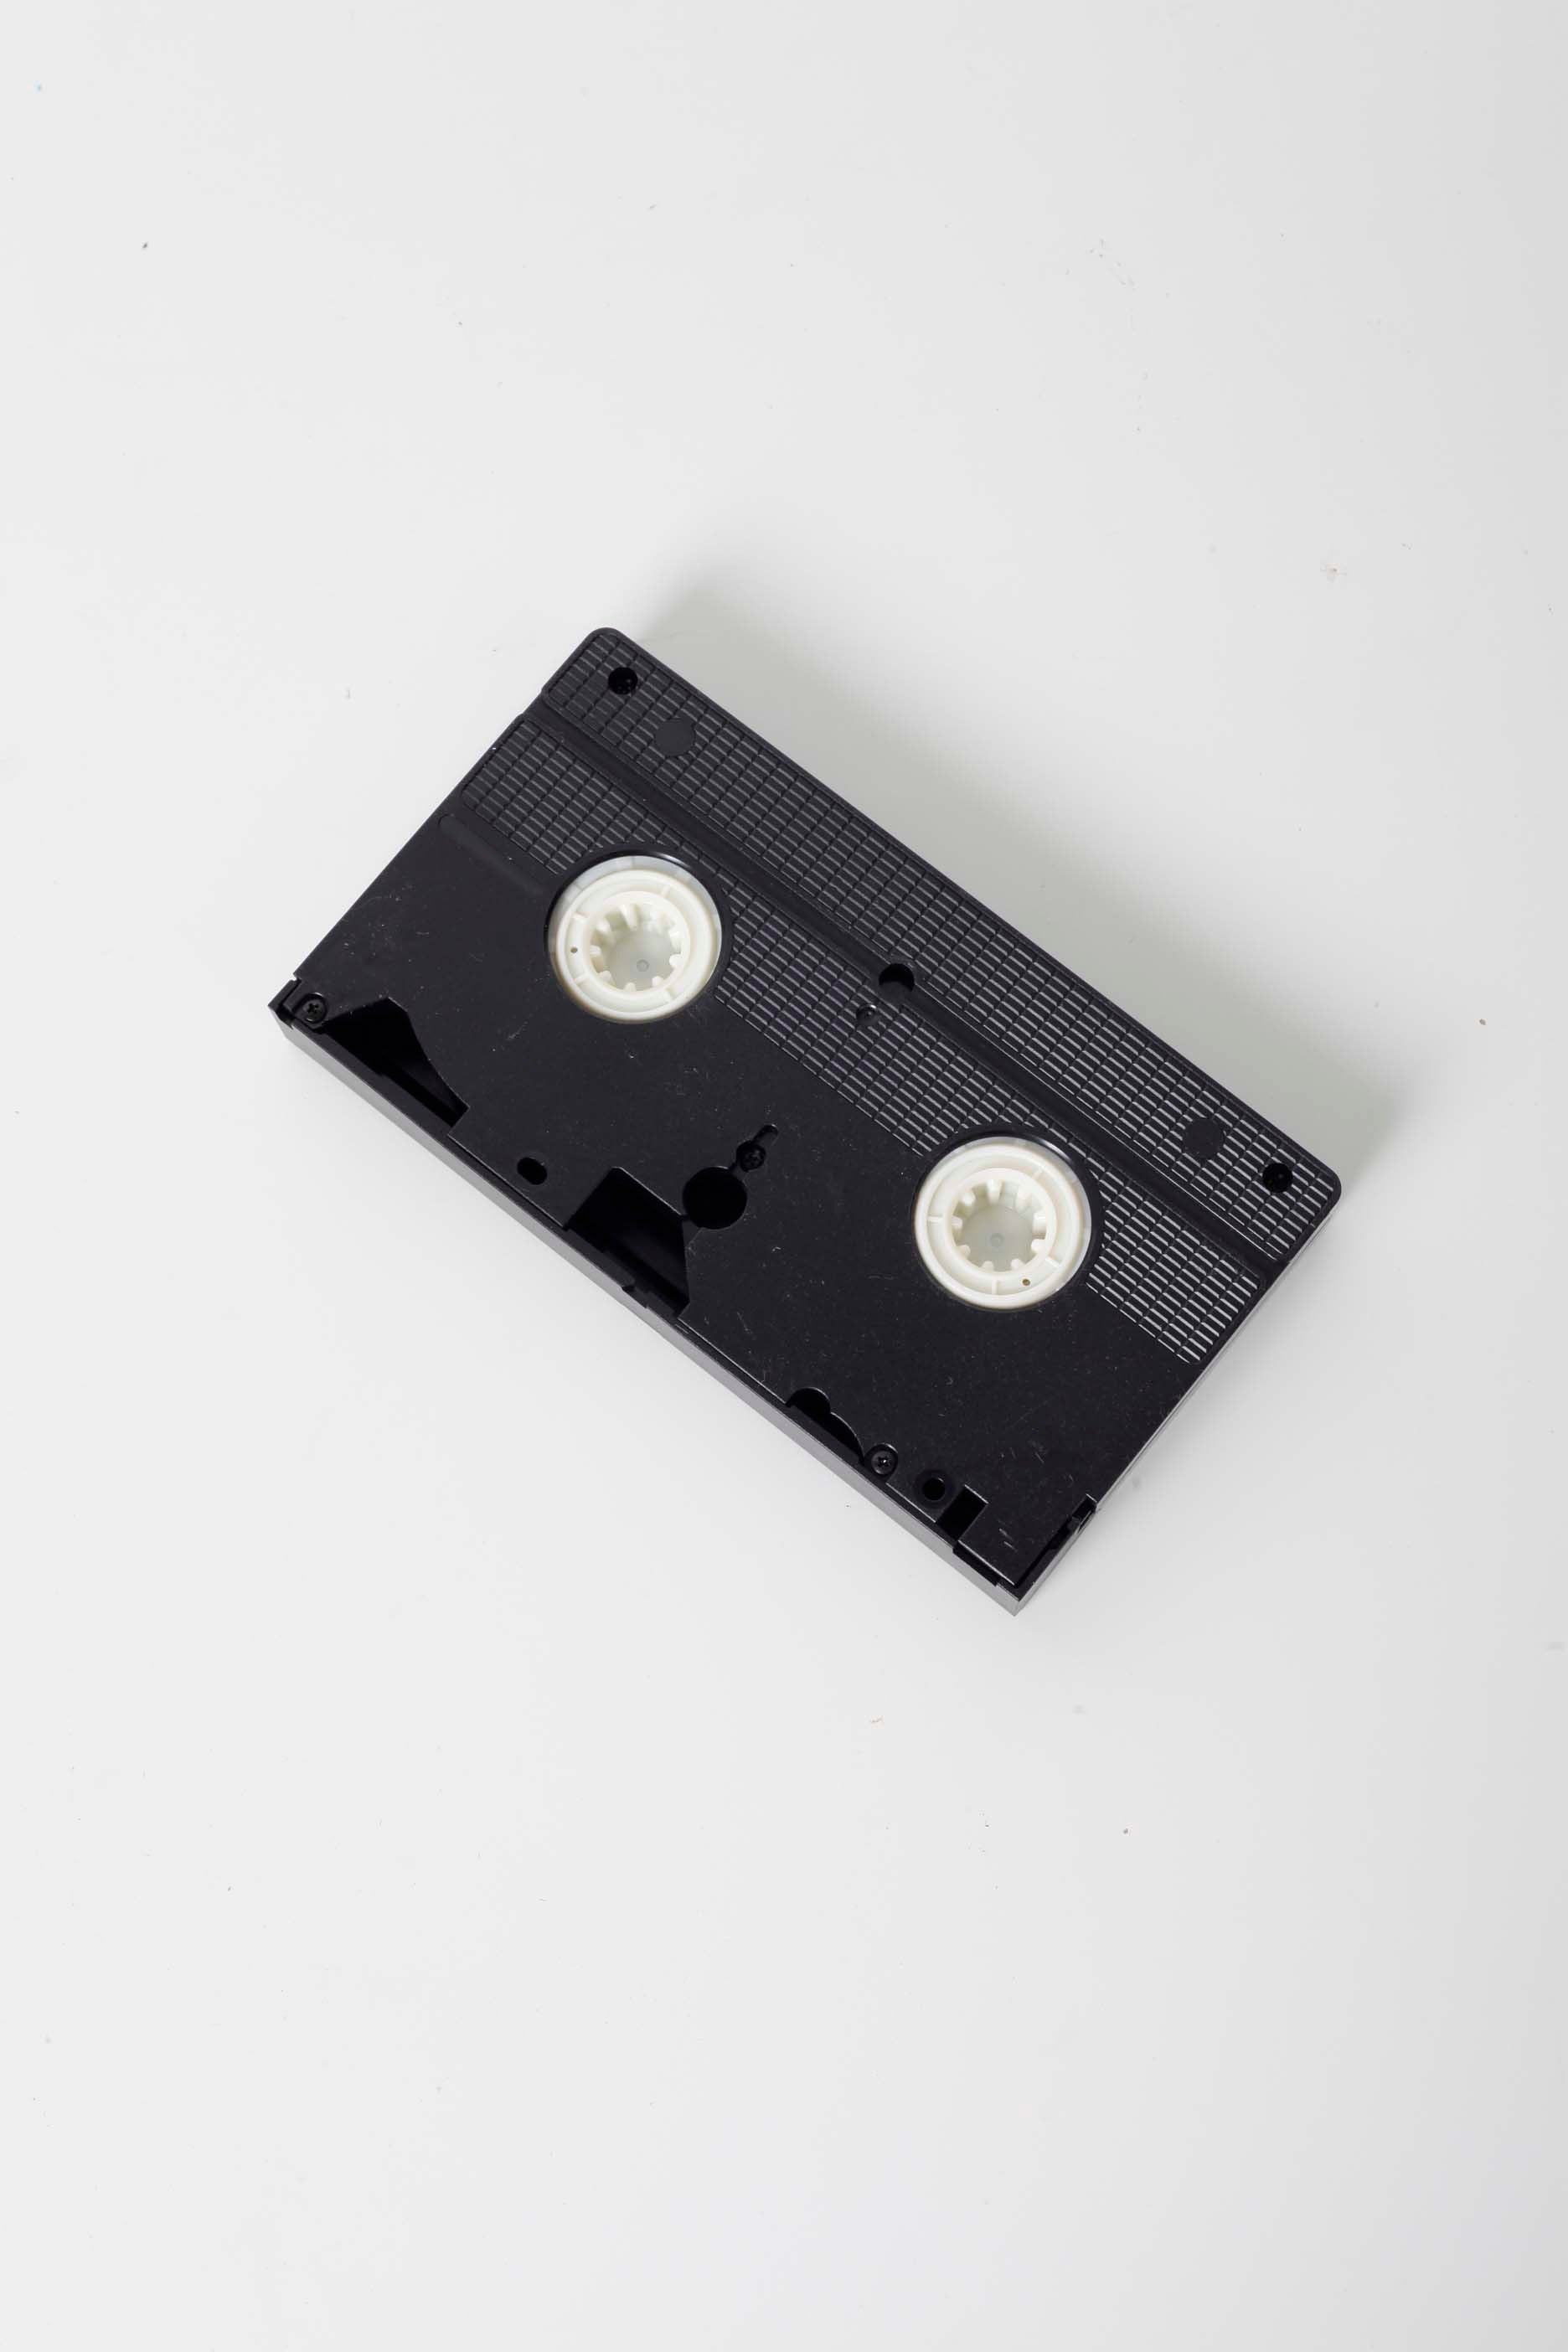 Vintage VHS Tapes